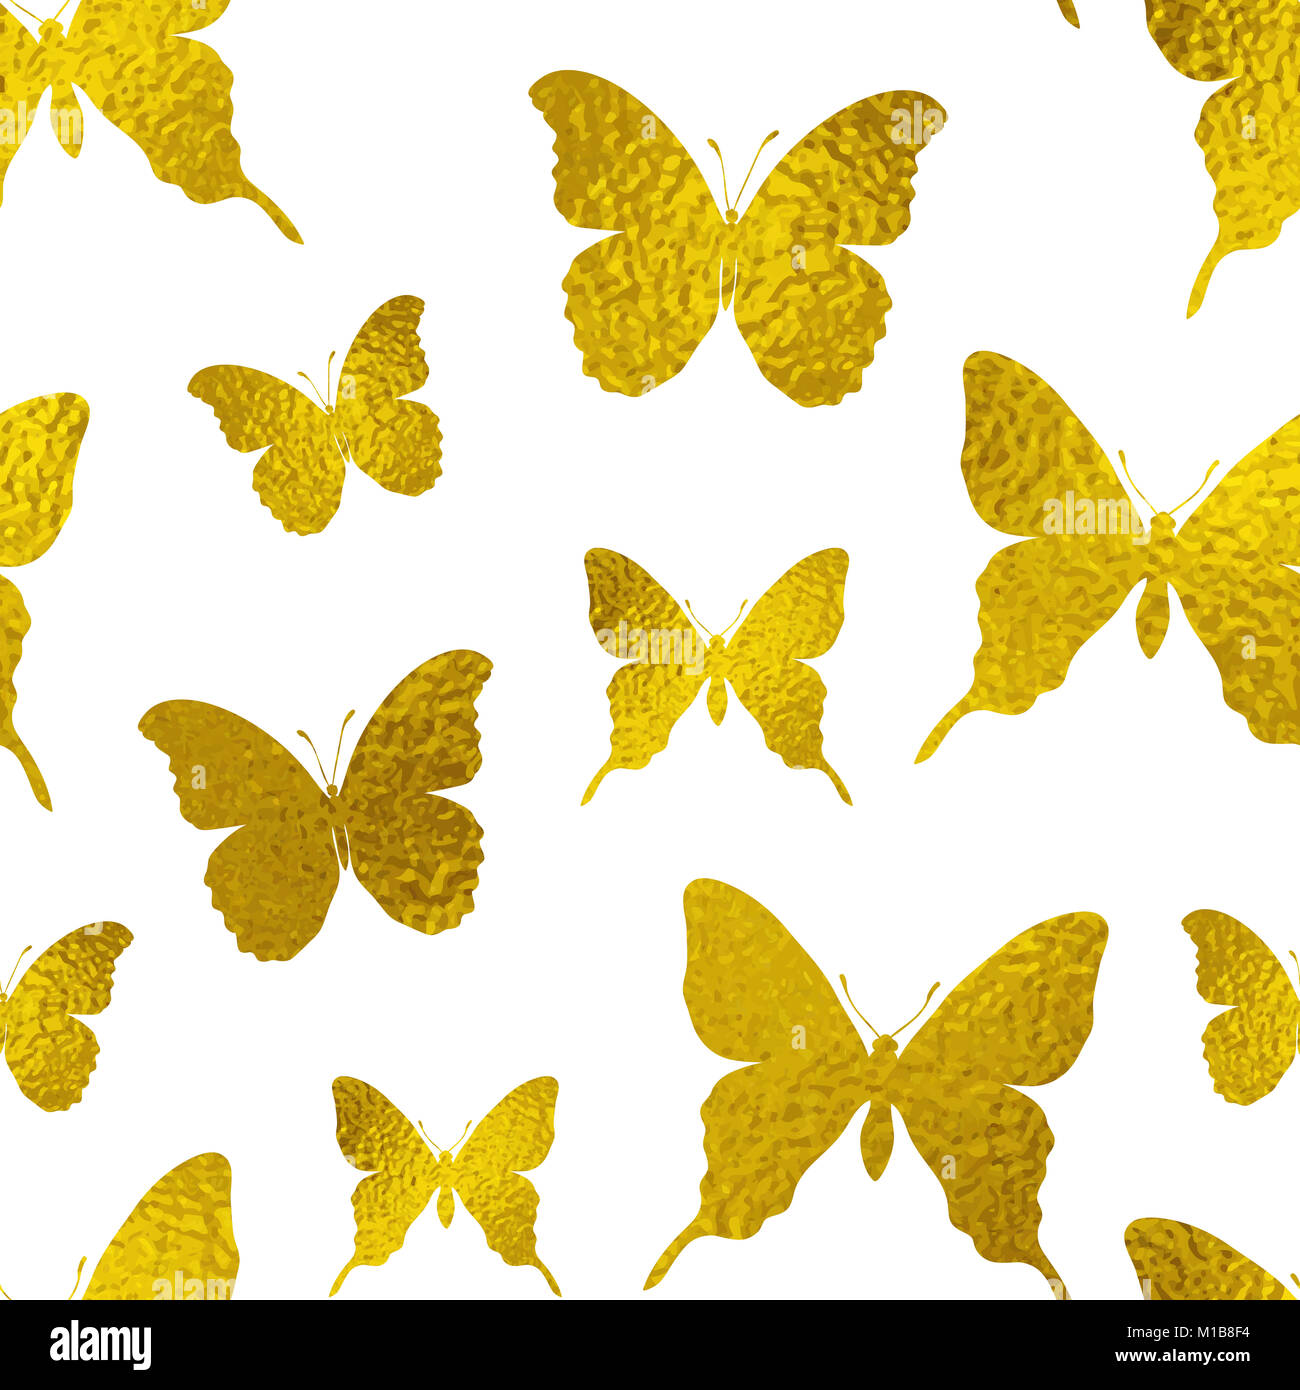 Symmetrical Pattern of Golden Butterflies ( Gold butterflies ) |  Photographic Print